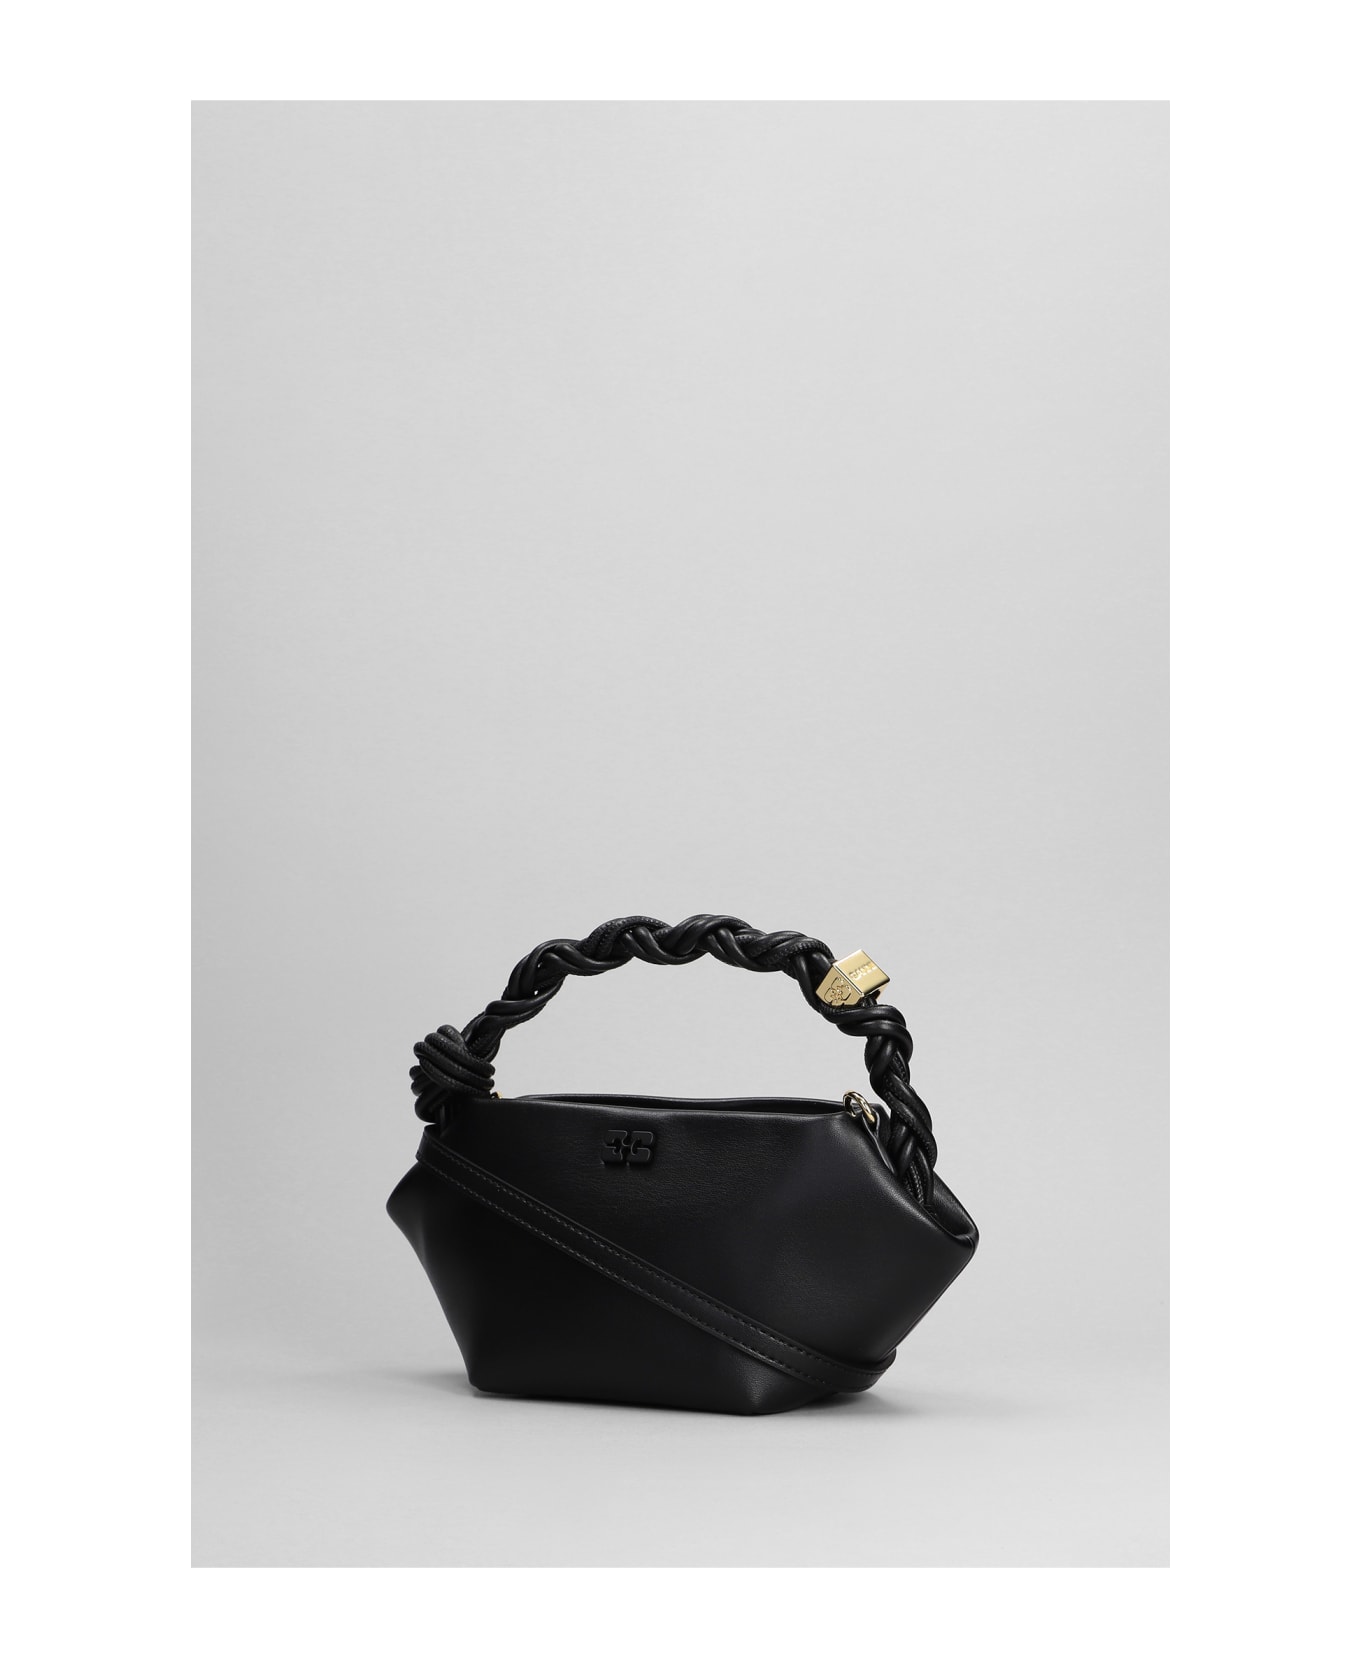 Ganni Bou Hand Bag In Black Leather - black